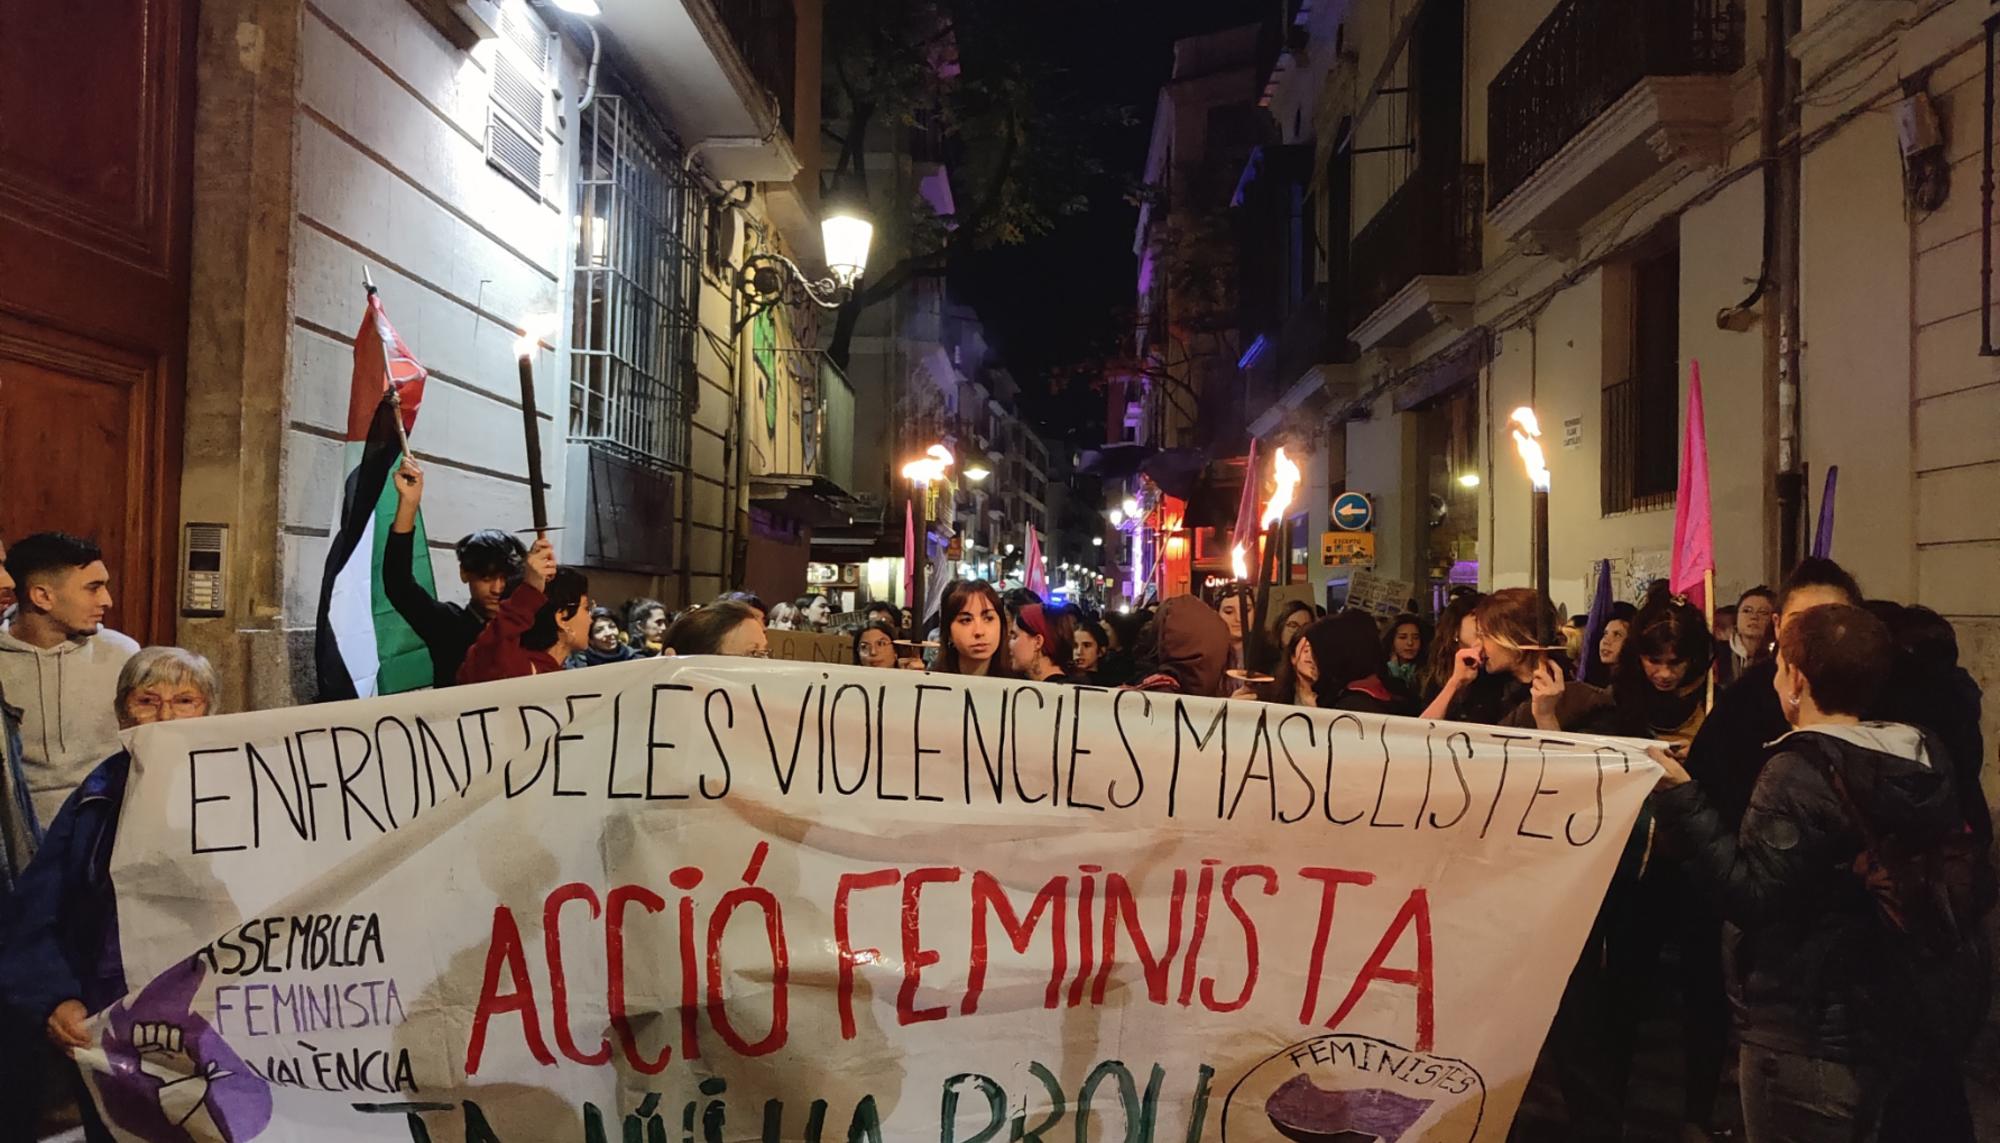 La Assemblea Feminista de València convocó una concentración en la noche del 24 de noviembre que recorrió el centro de la ciduad. - 2